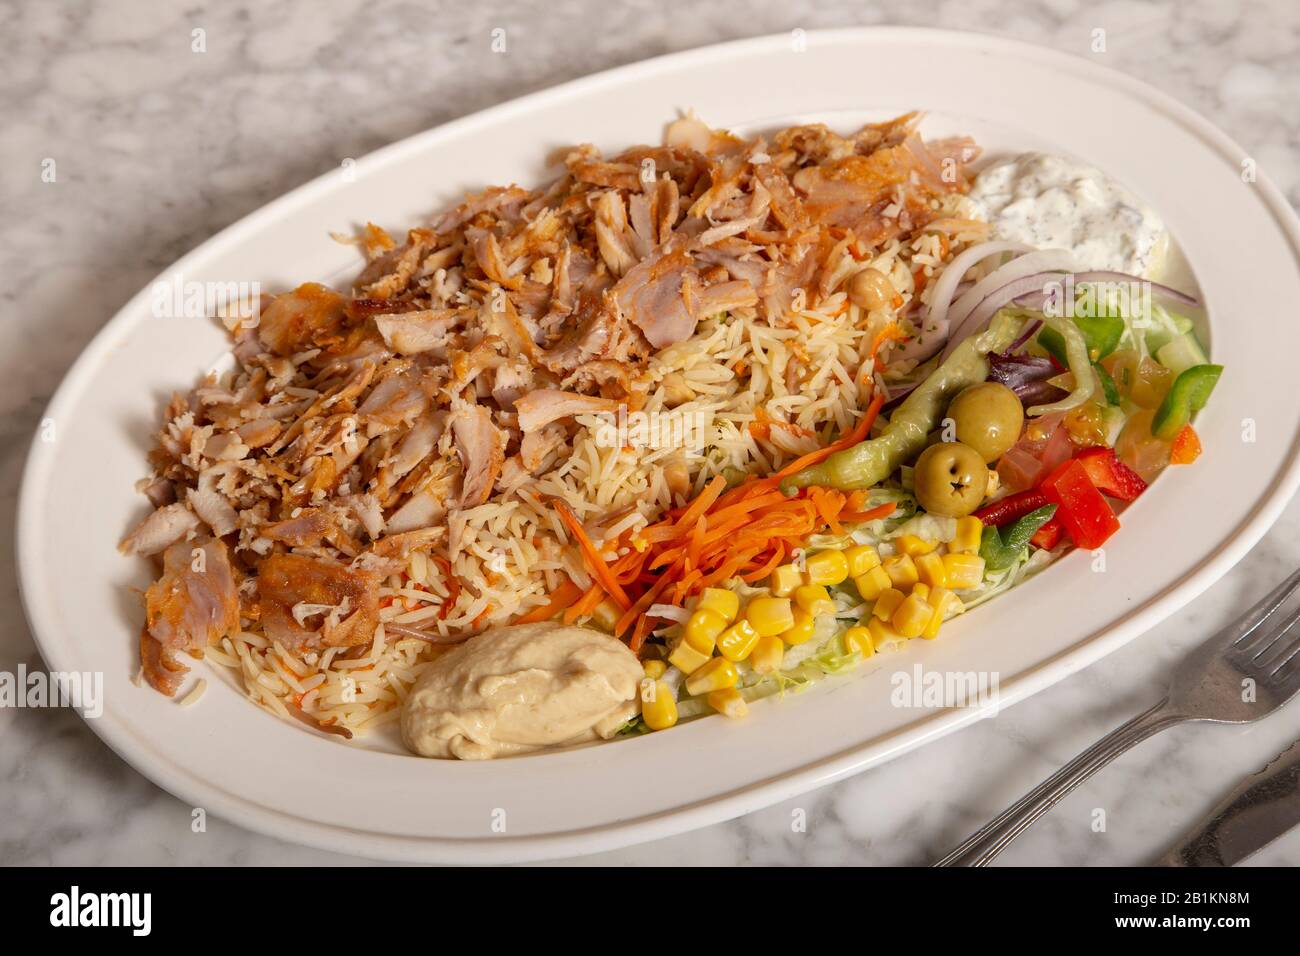 Türkische Speise. Reis mit Fleisch Hühnerkebab, Hummusfries und Salat. Stockfoto